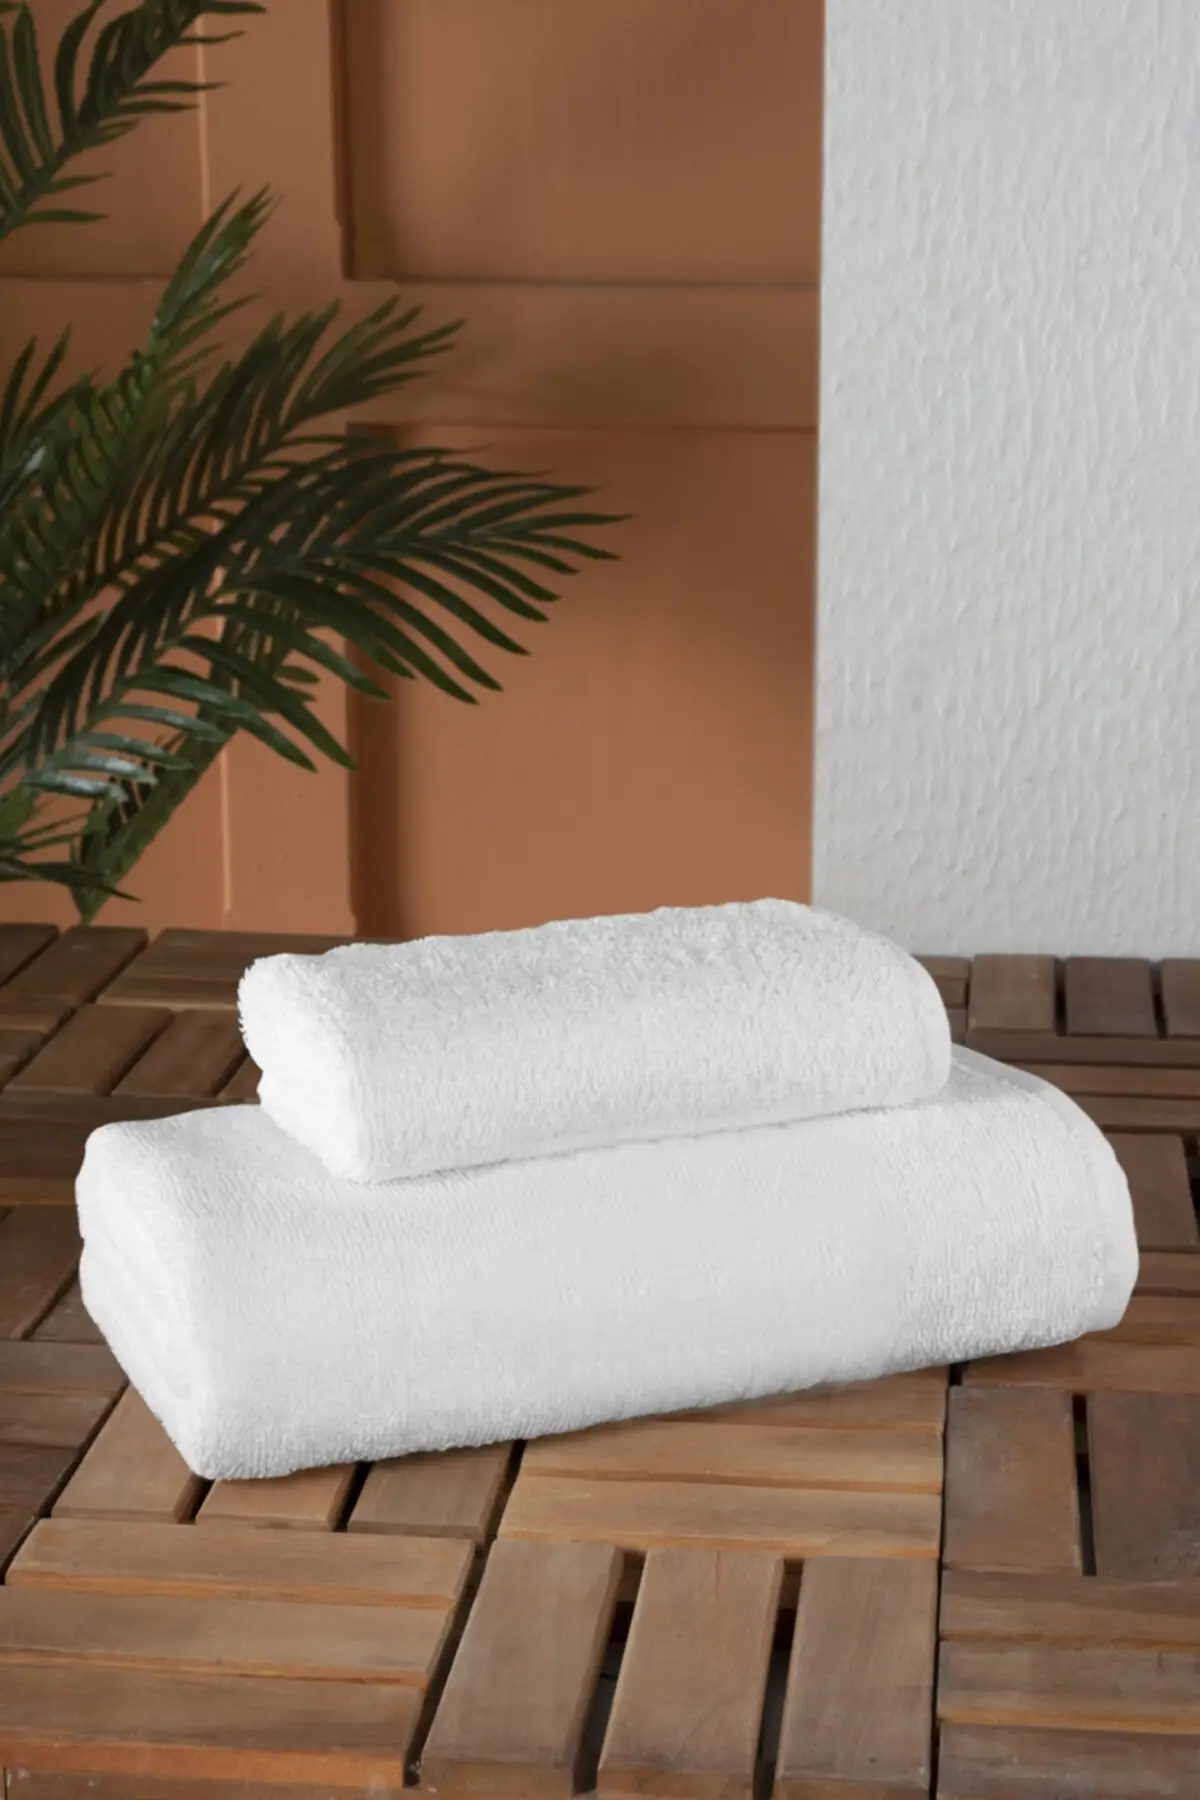 Hotel Group Bath & Hand Towel Cotton 1 Piece 70x140 Cm +1 Piece 50x90 Cm White, Bath Towels, Hair Towels